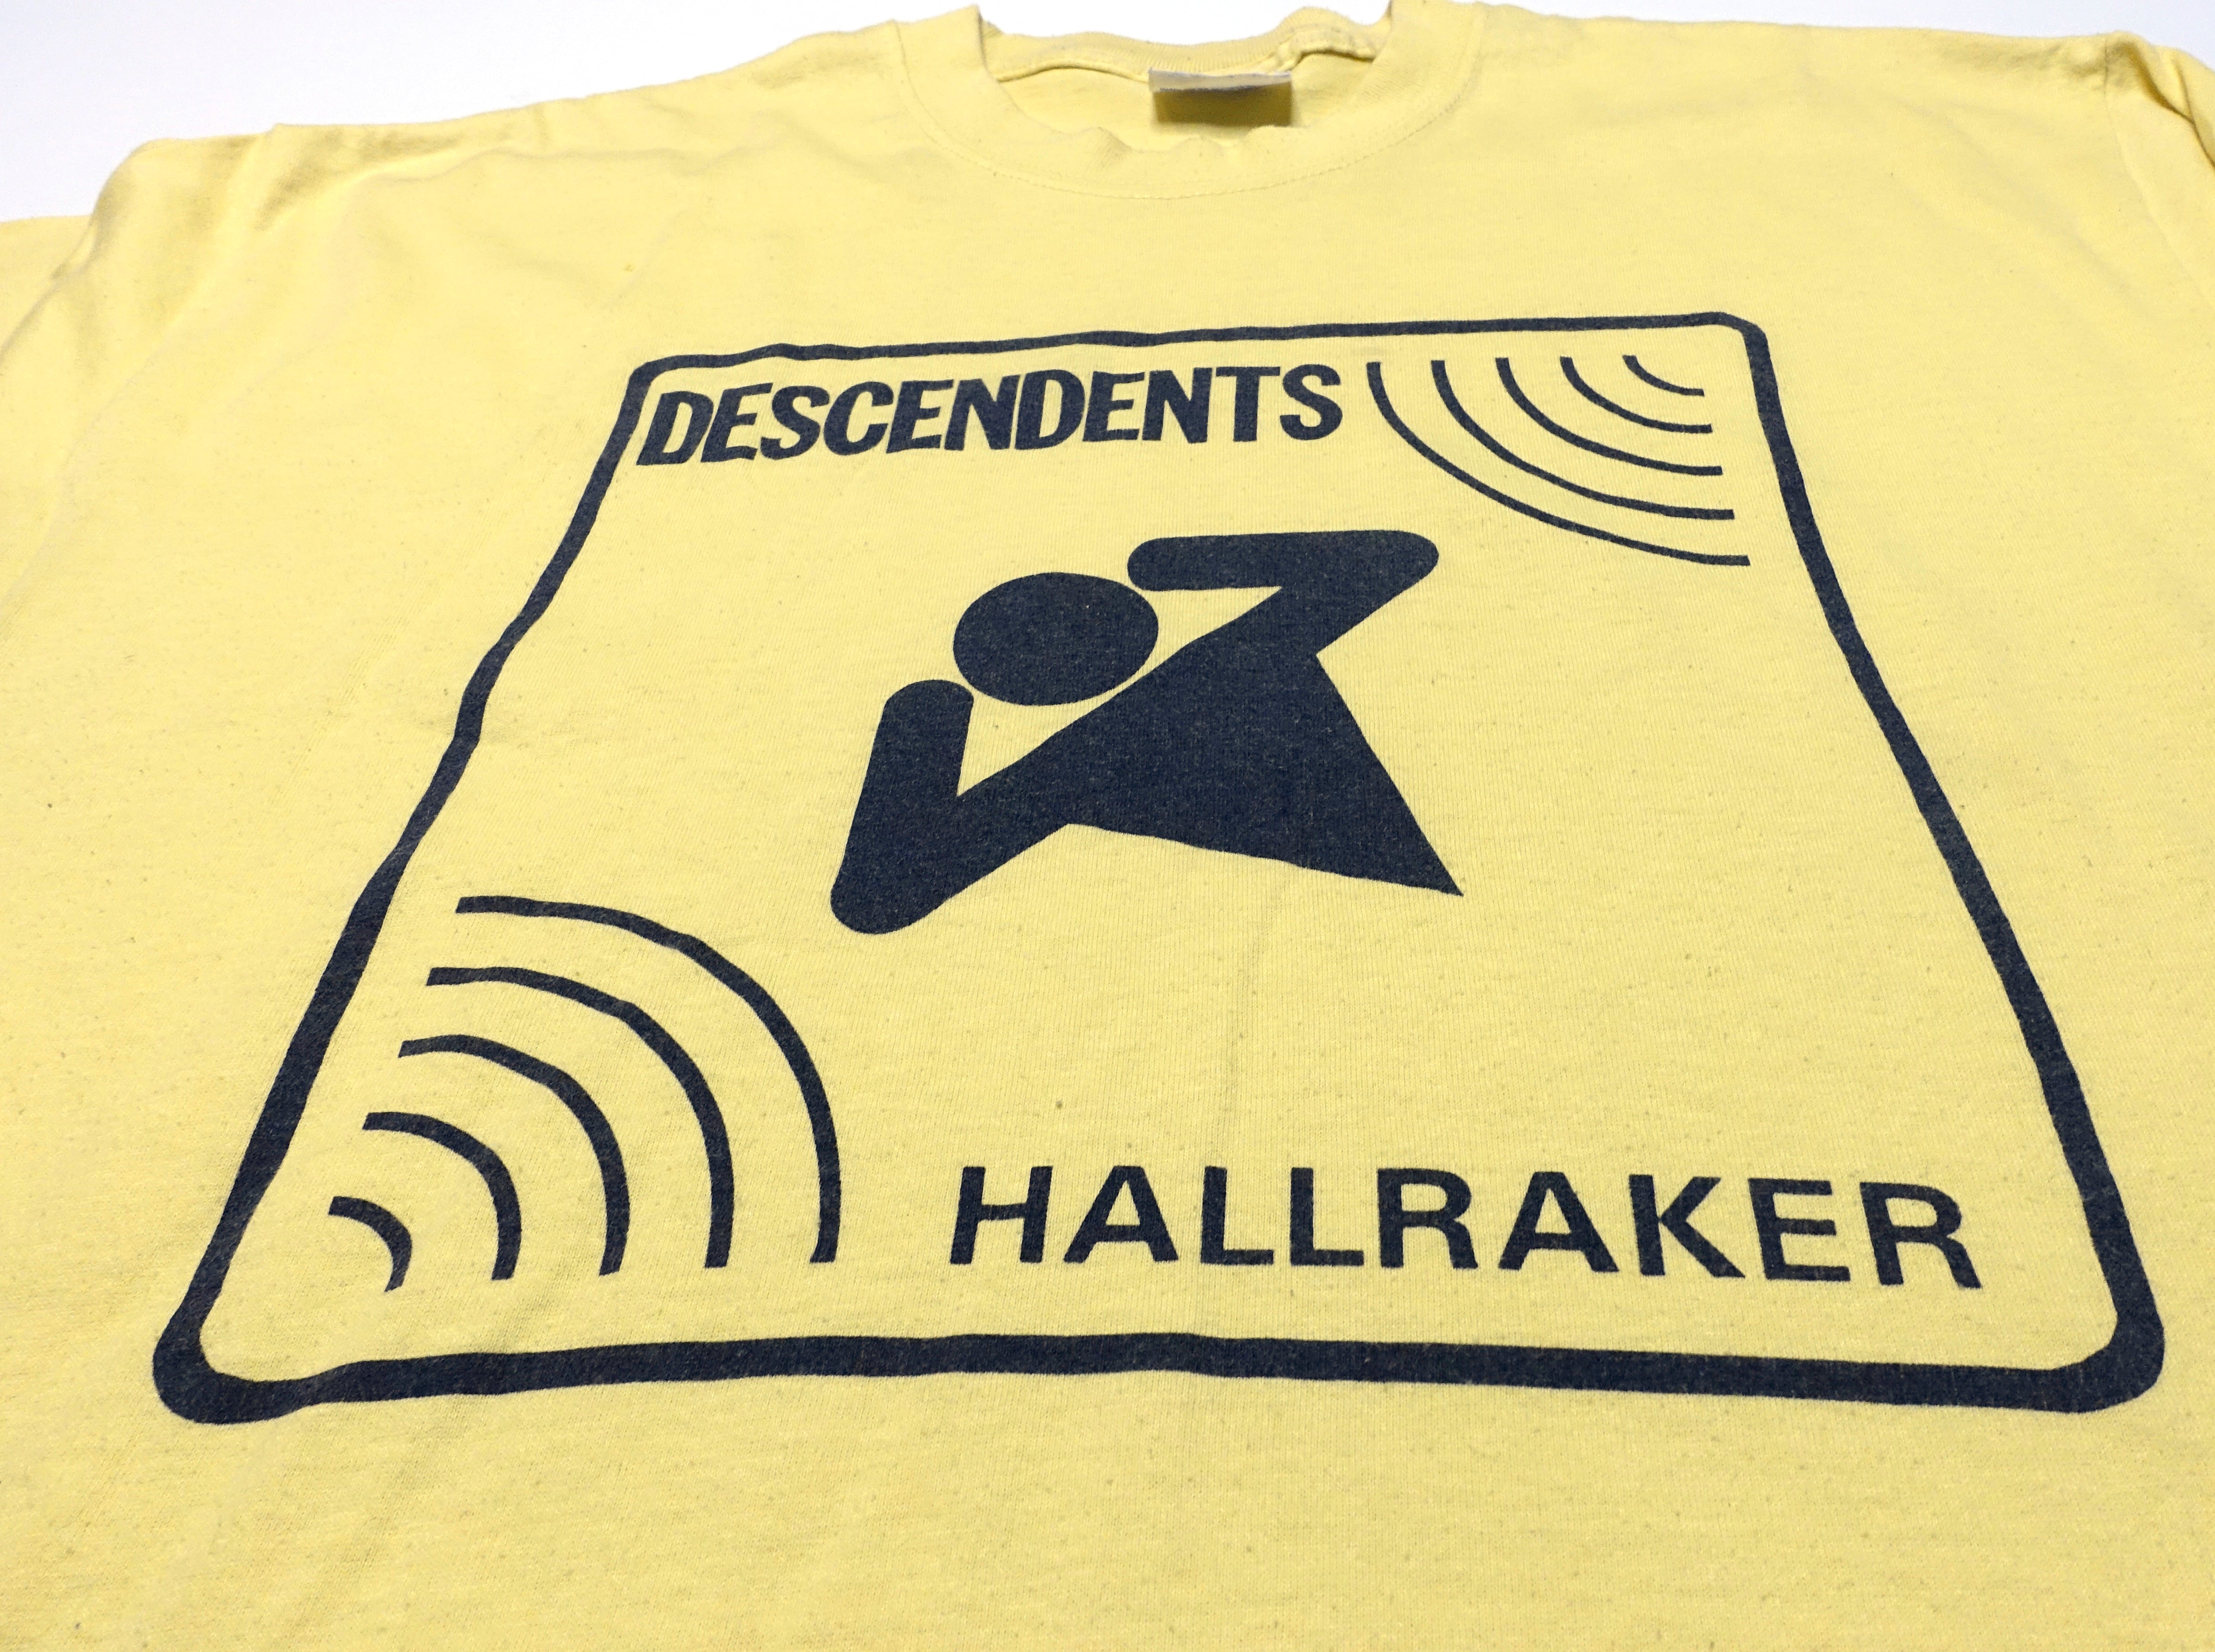 Descendents - 90's Hallraker Live Shirt Size Large